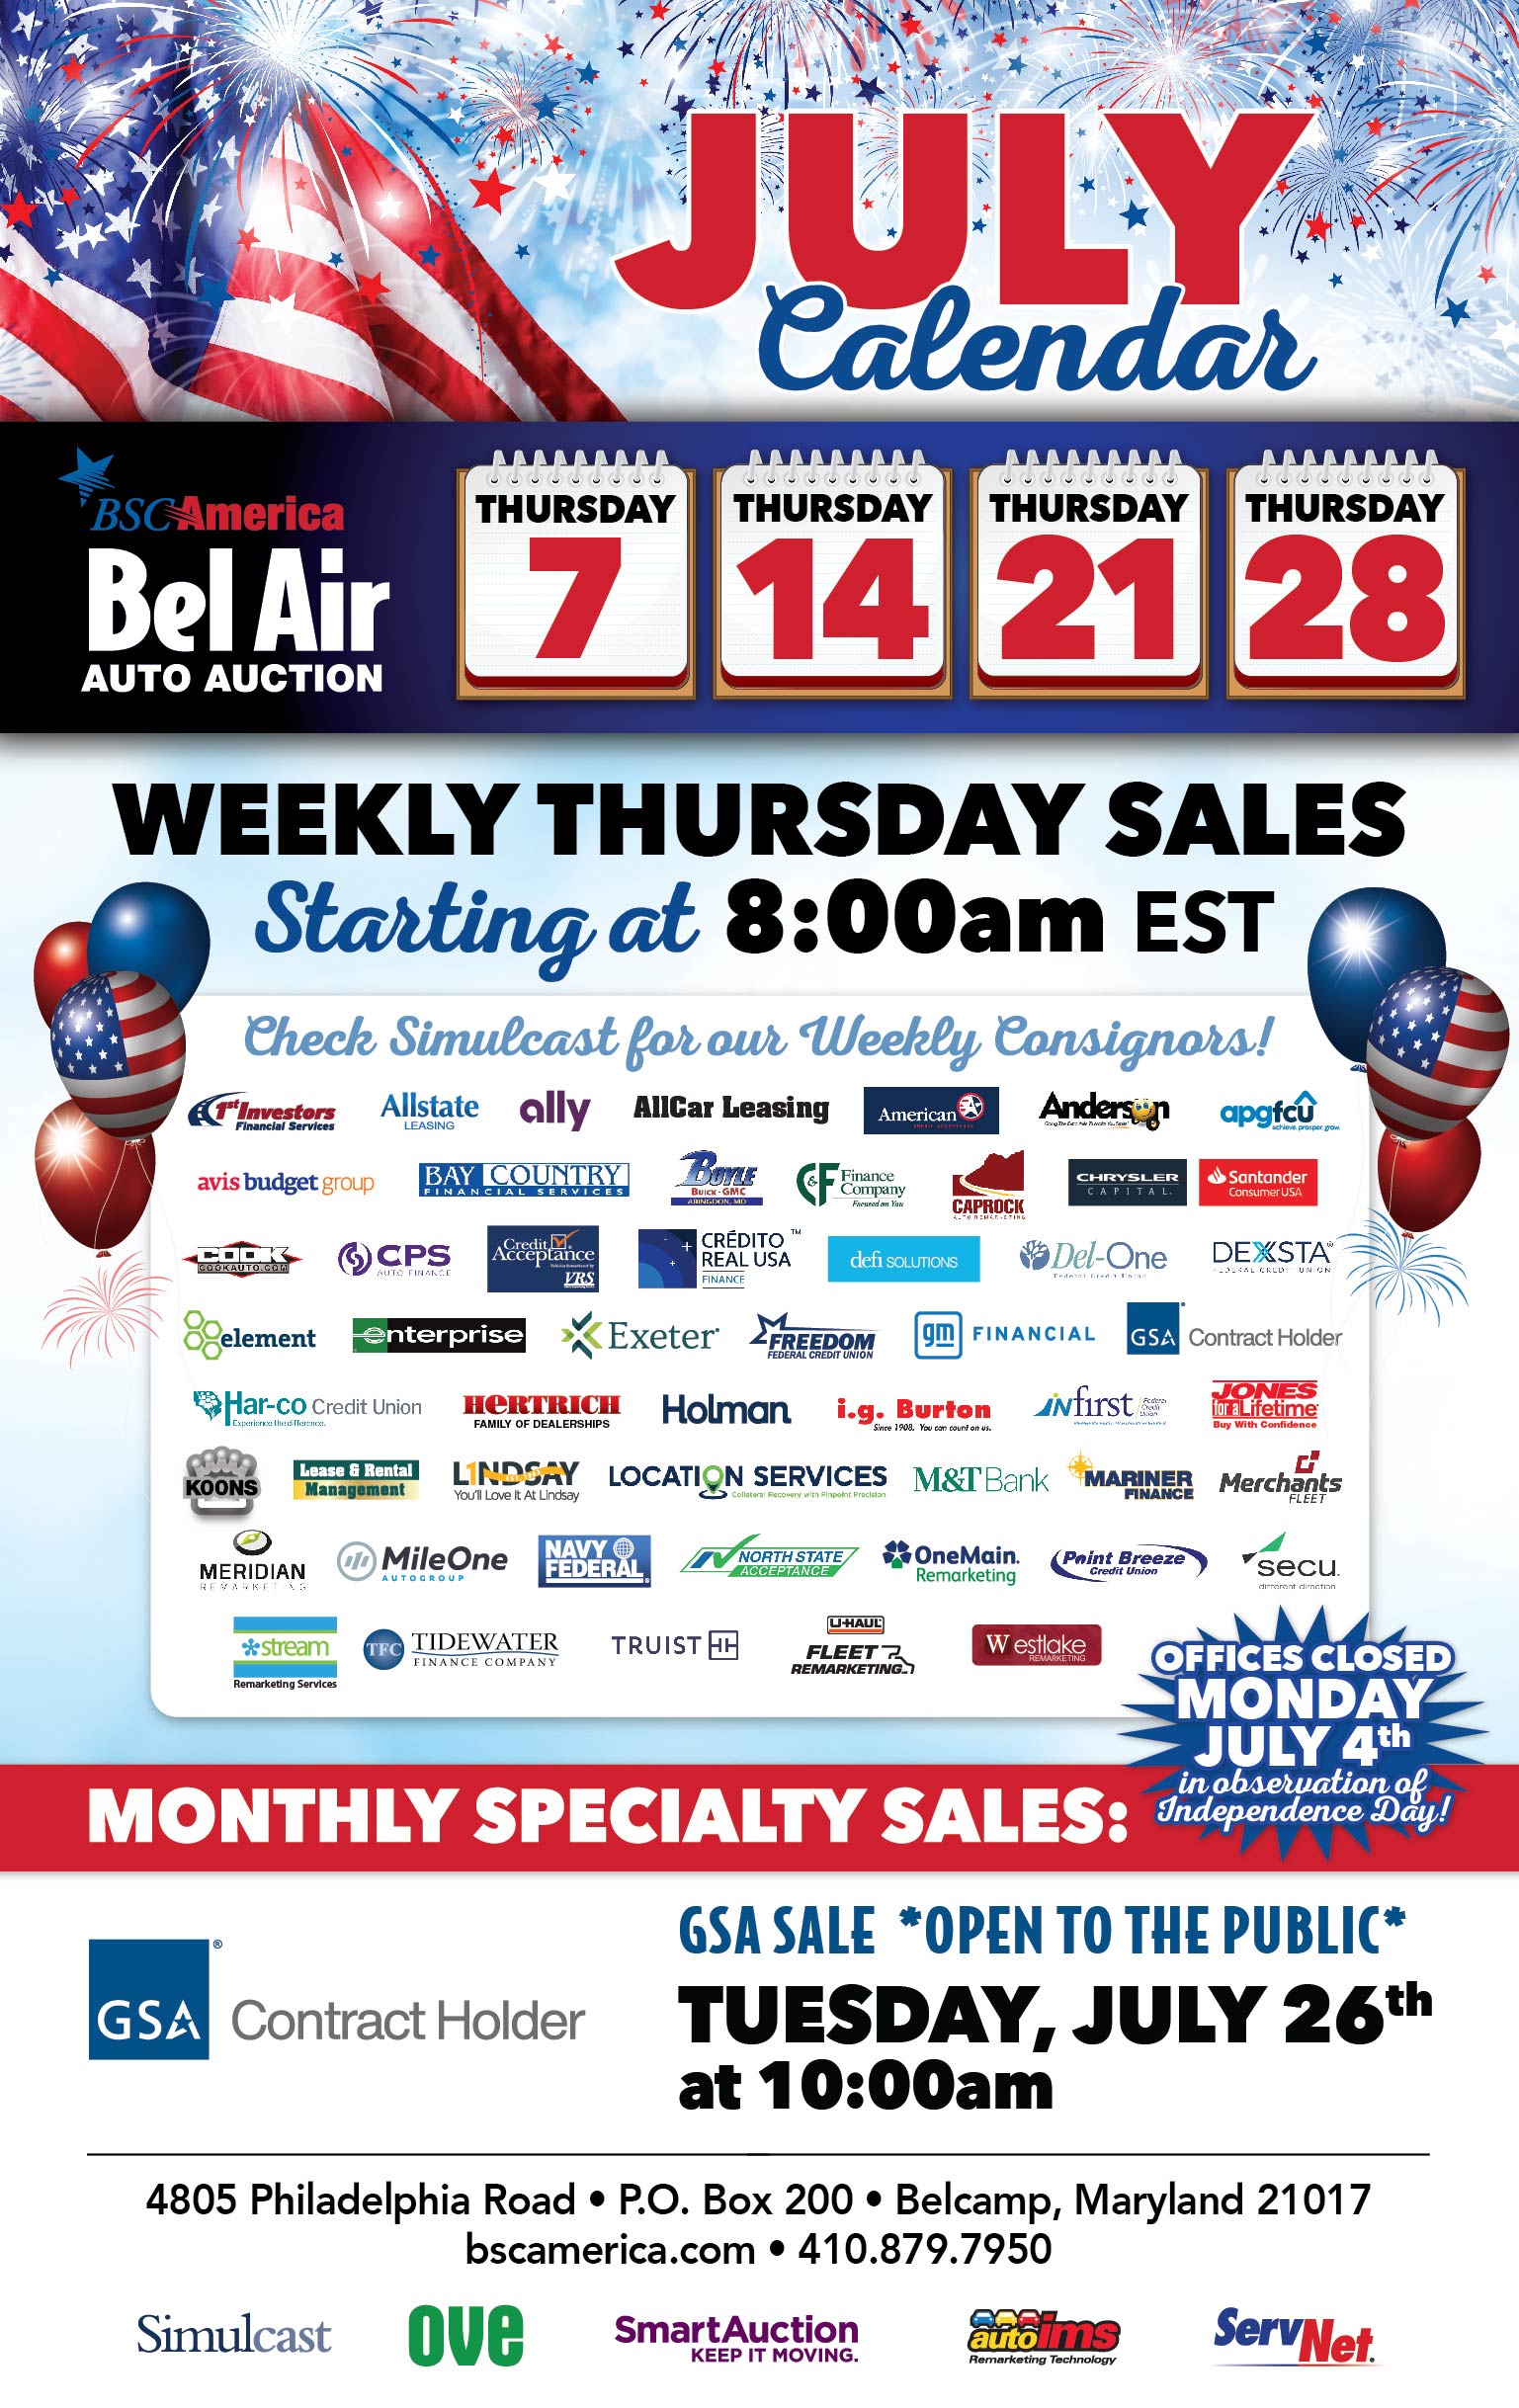 Bel Air Auto Auction Calendar & Events